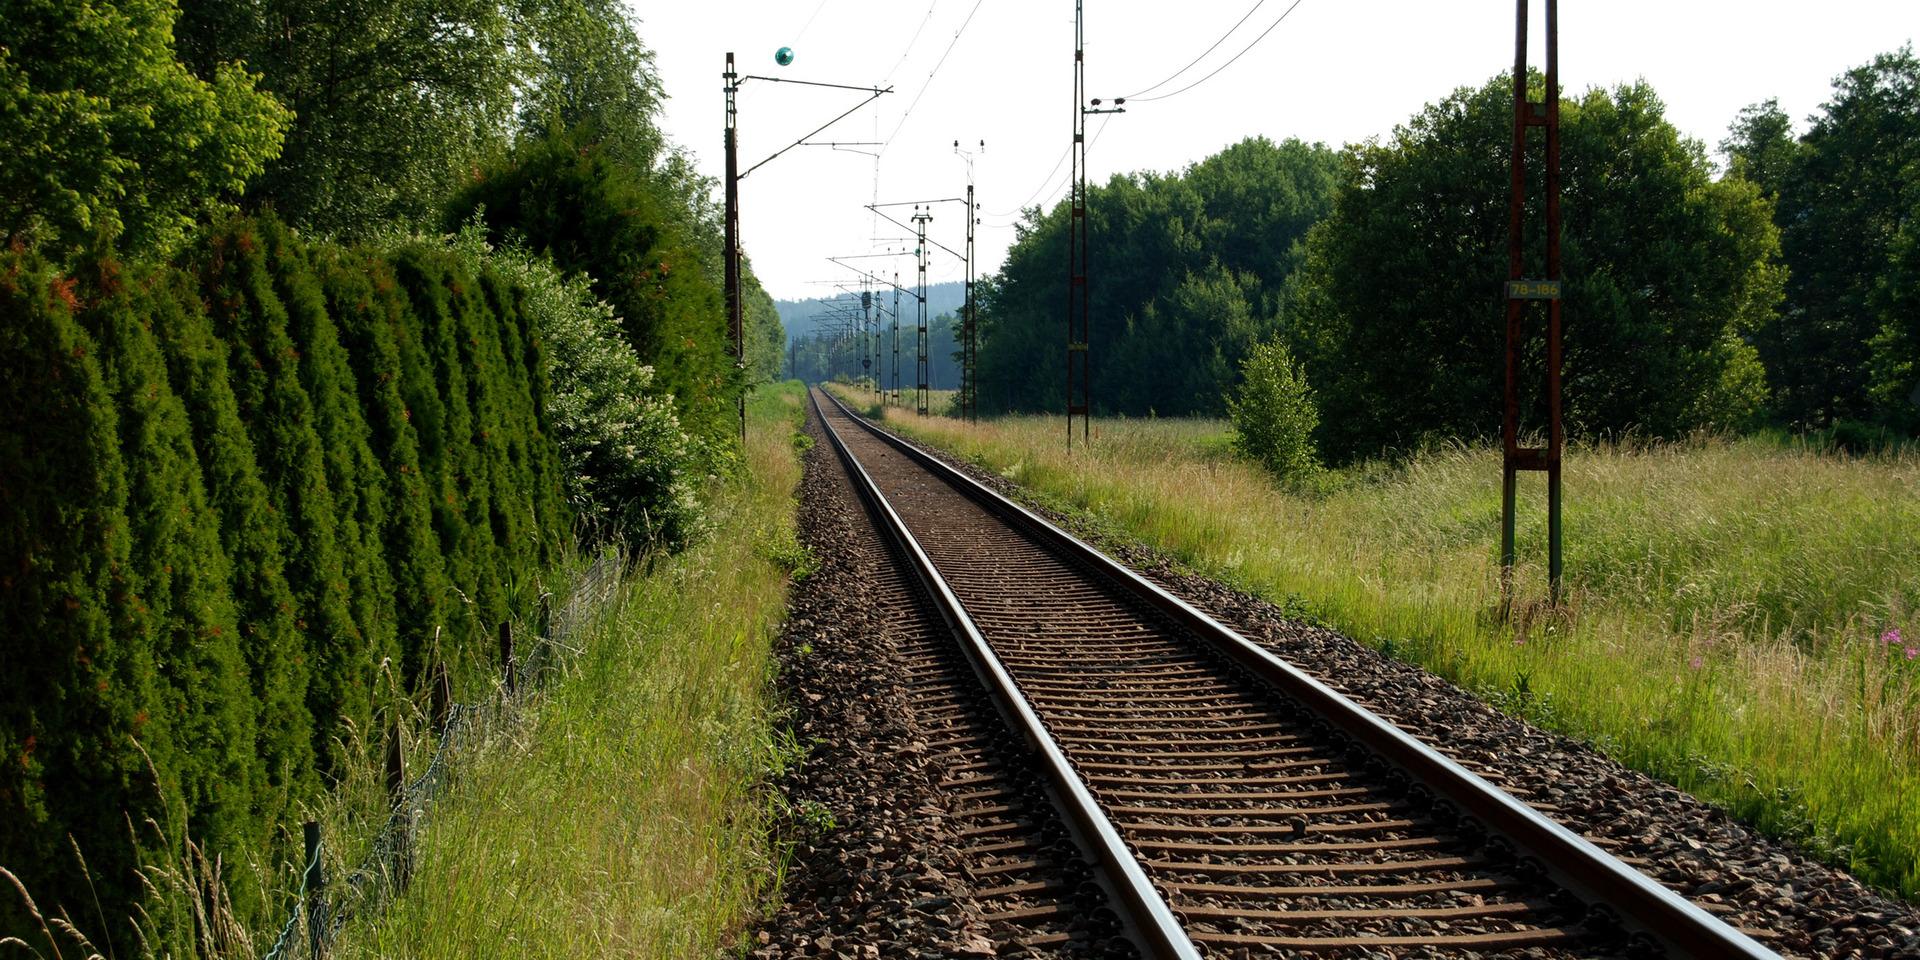 Det krävs nytänkande för att möjliggöra järnvägar och vägar som lever upp till behoven i hela Västra Götaland, skriver debattörerna.